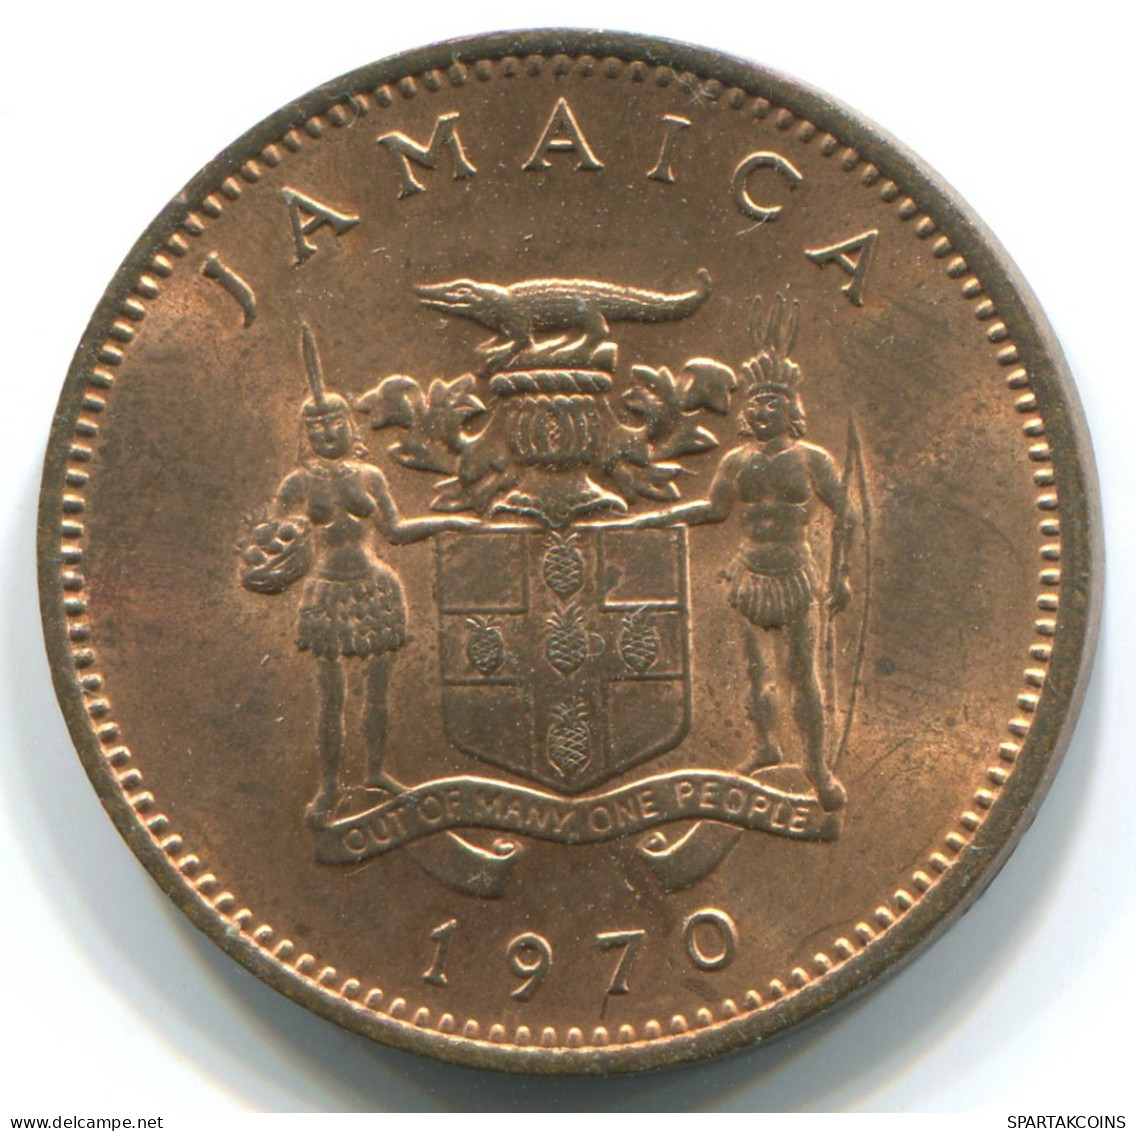 1 CENT 1970 JAMAICA Coin #WW1185.U - Jamaica